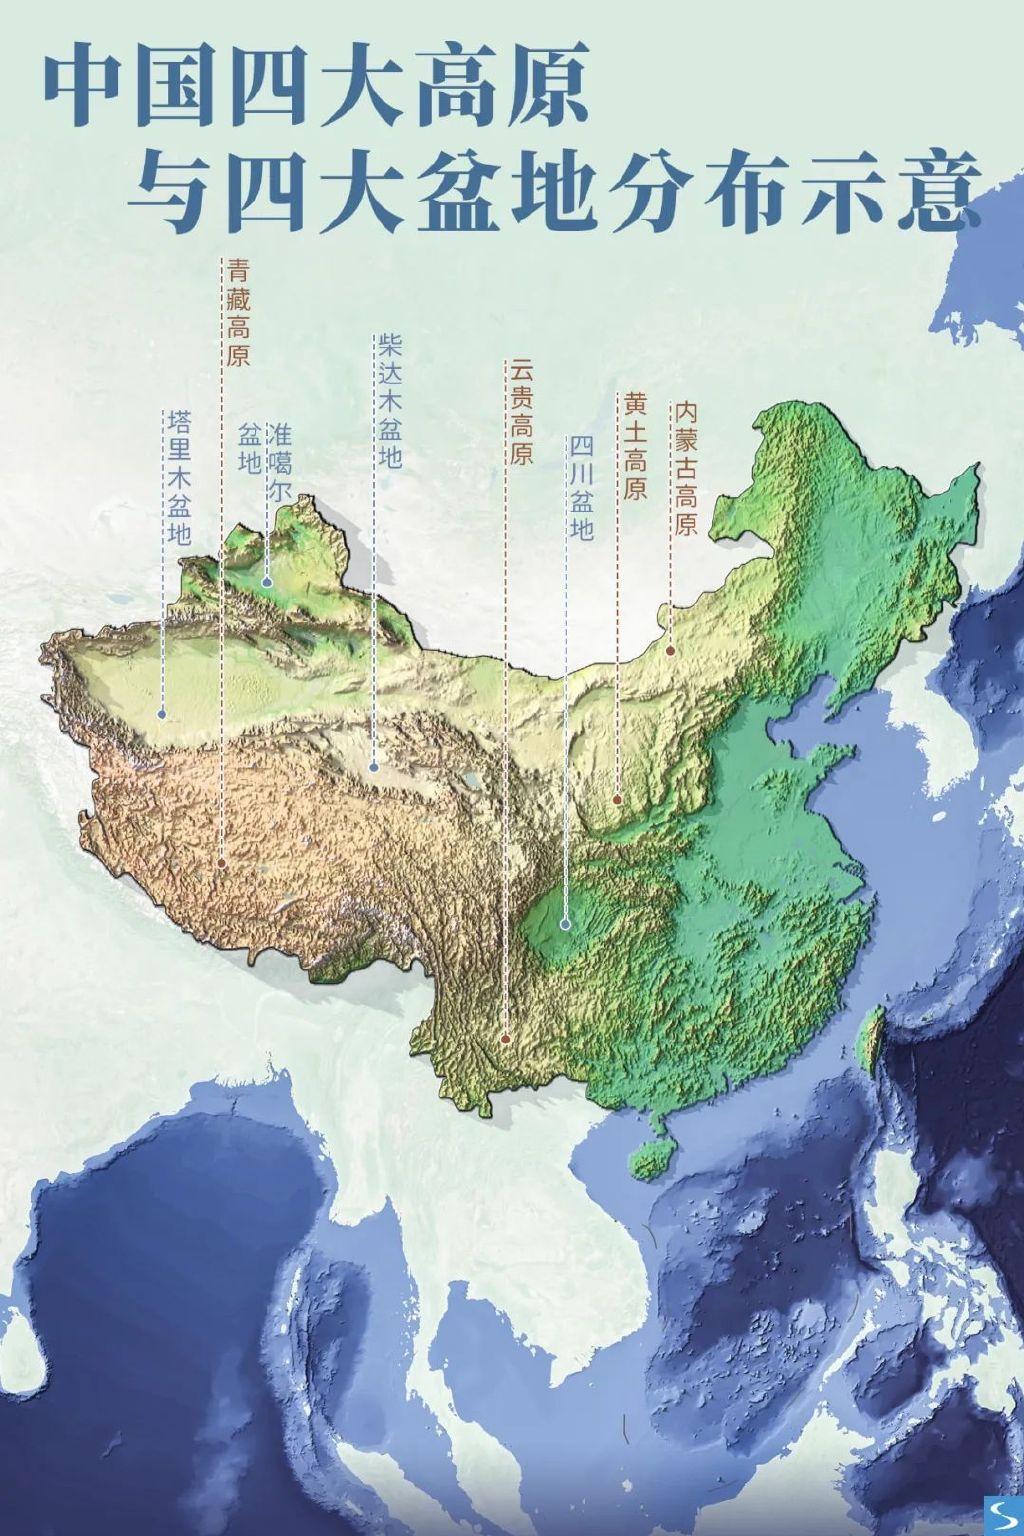 至此中国大地上呈现出明显的西高东低三级阶梯状平均海拔超过4000米的